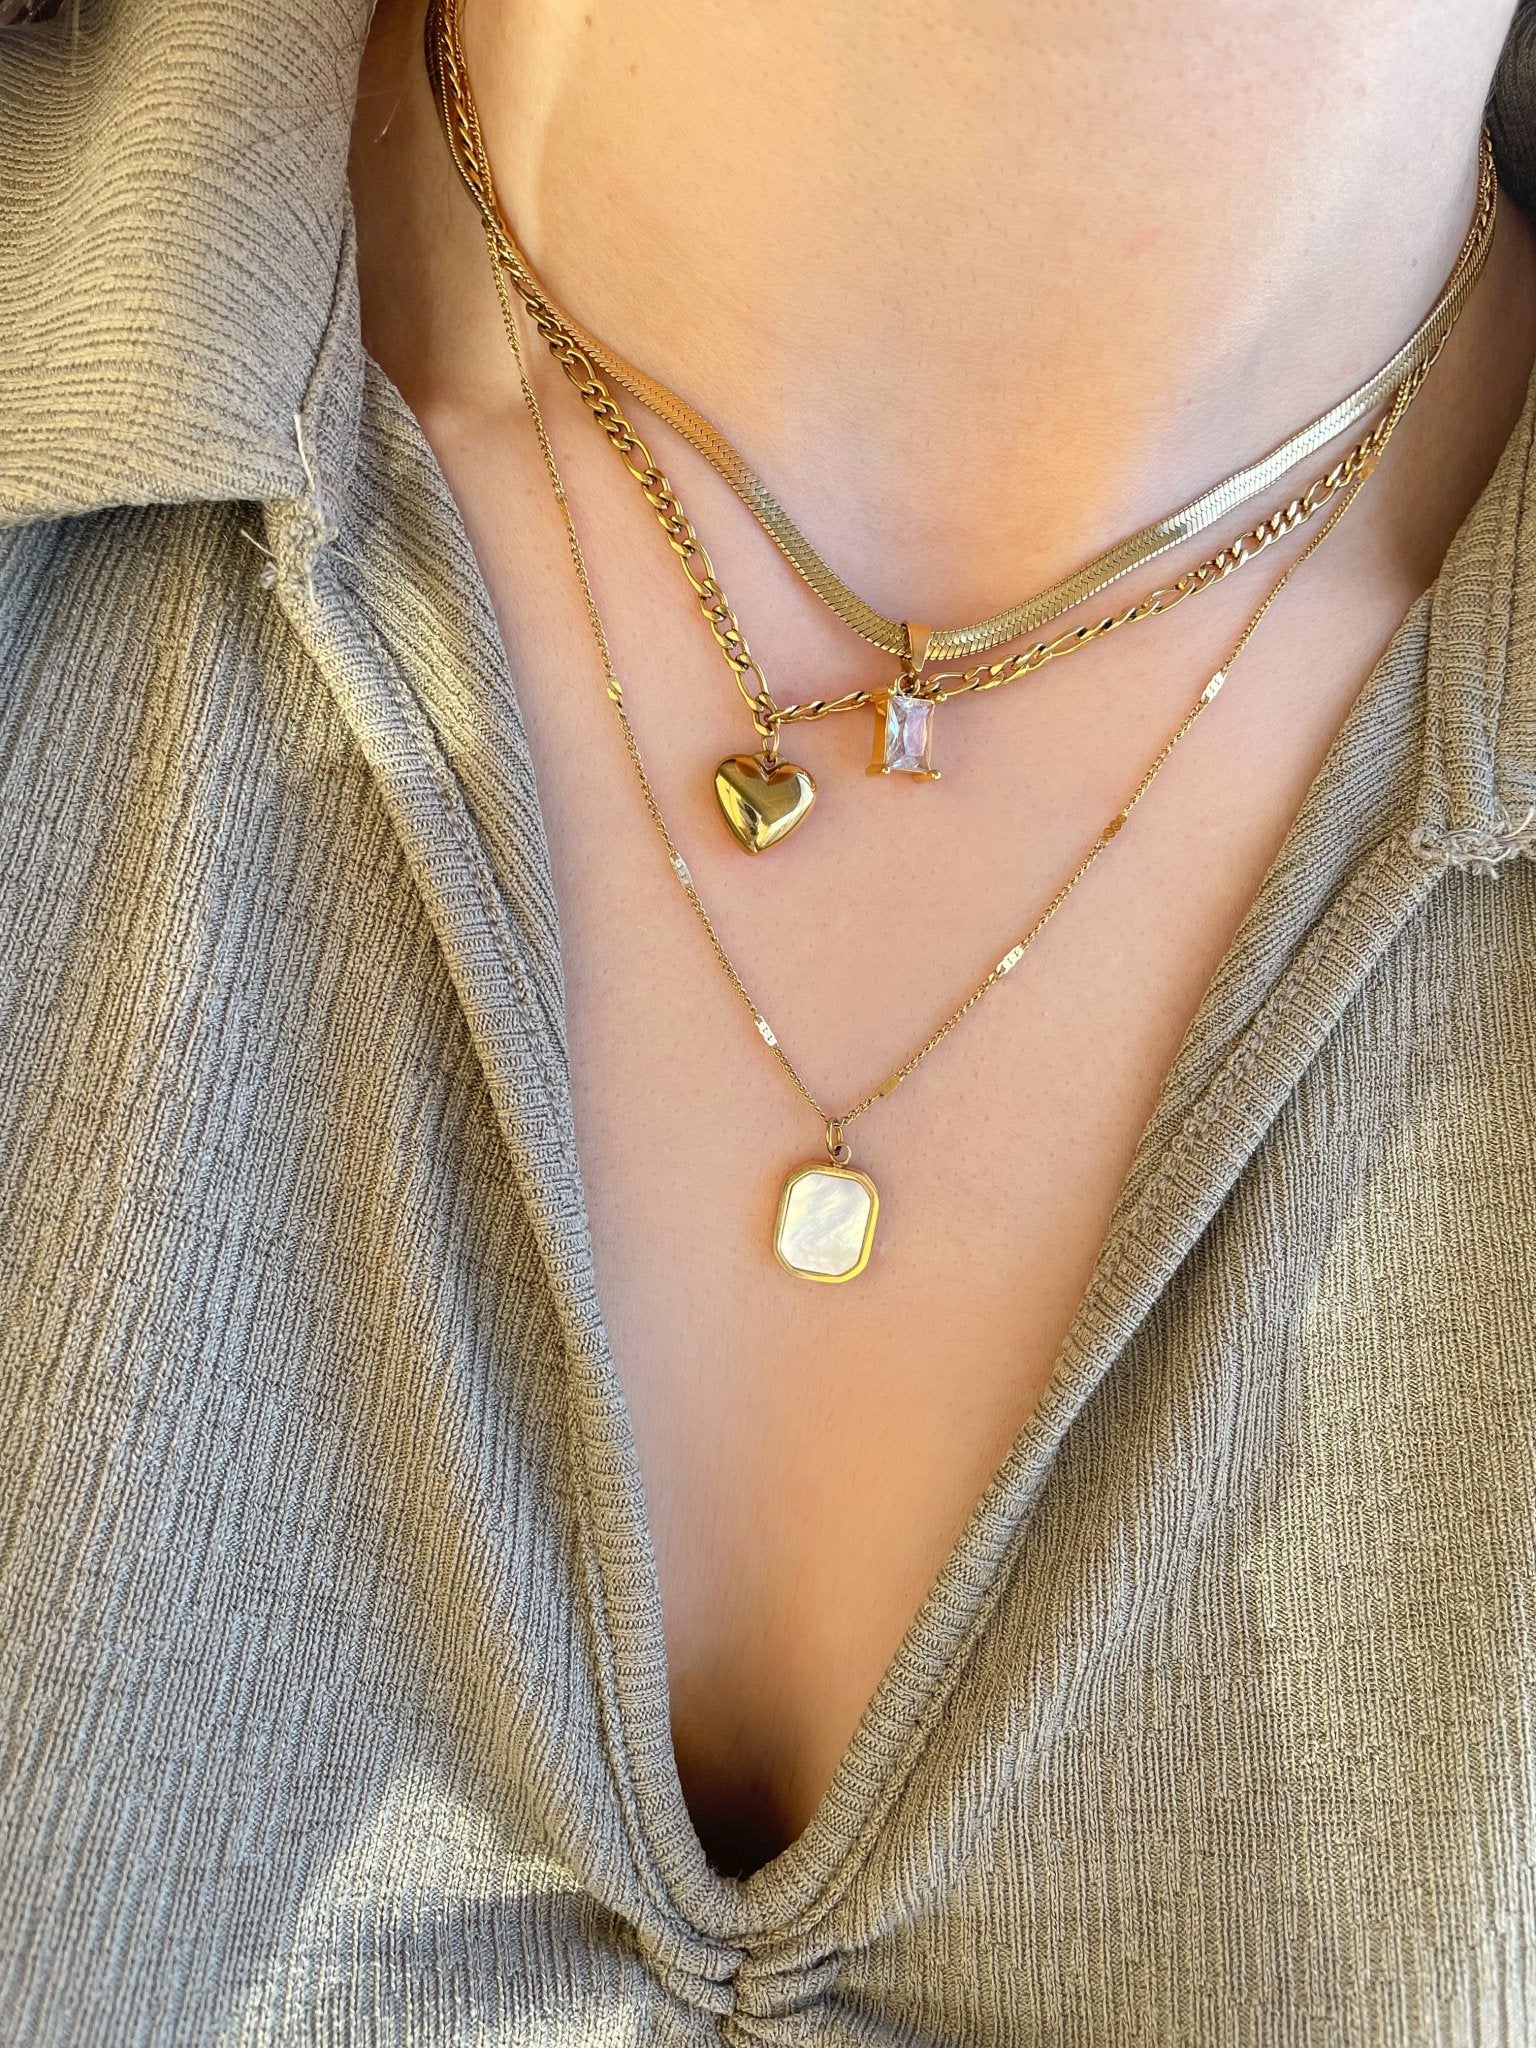 Freya Herringbone Pendant Gold Chain by Koréil Jewelry